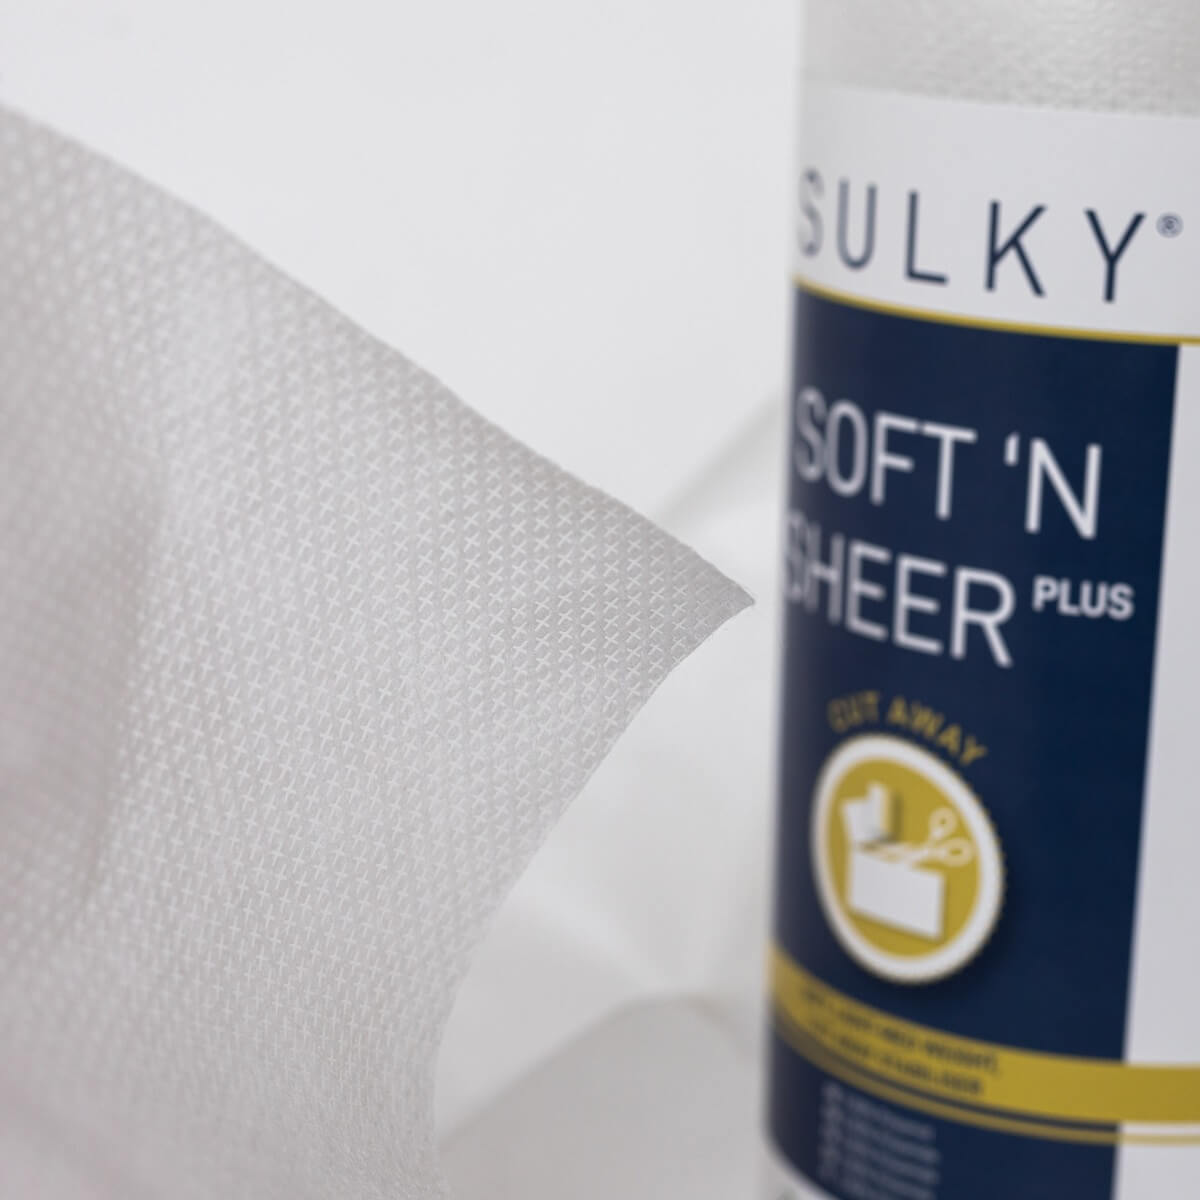 SULKY SOFT´N SHEER PLUS white, 25cm x 5m